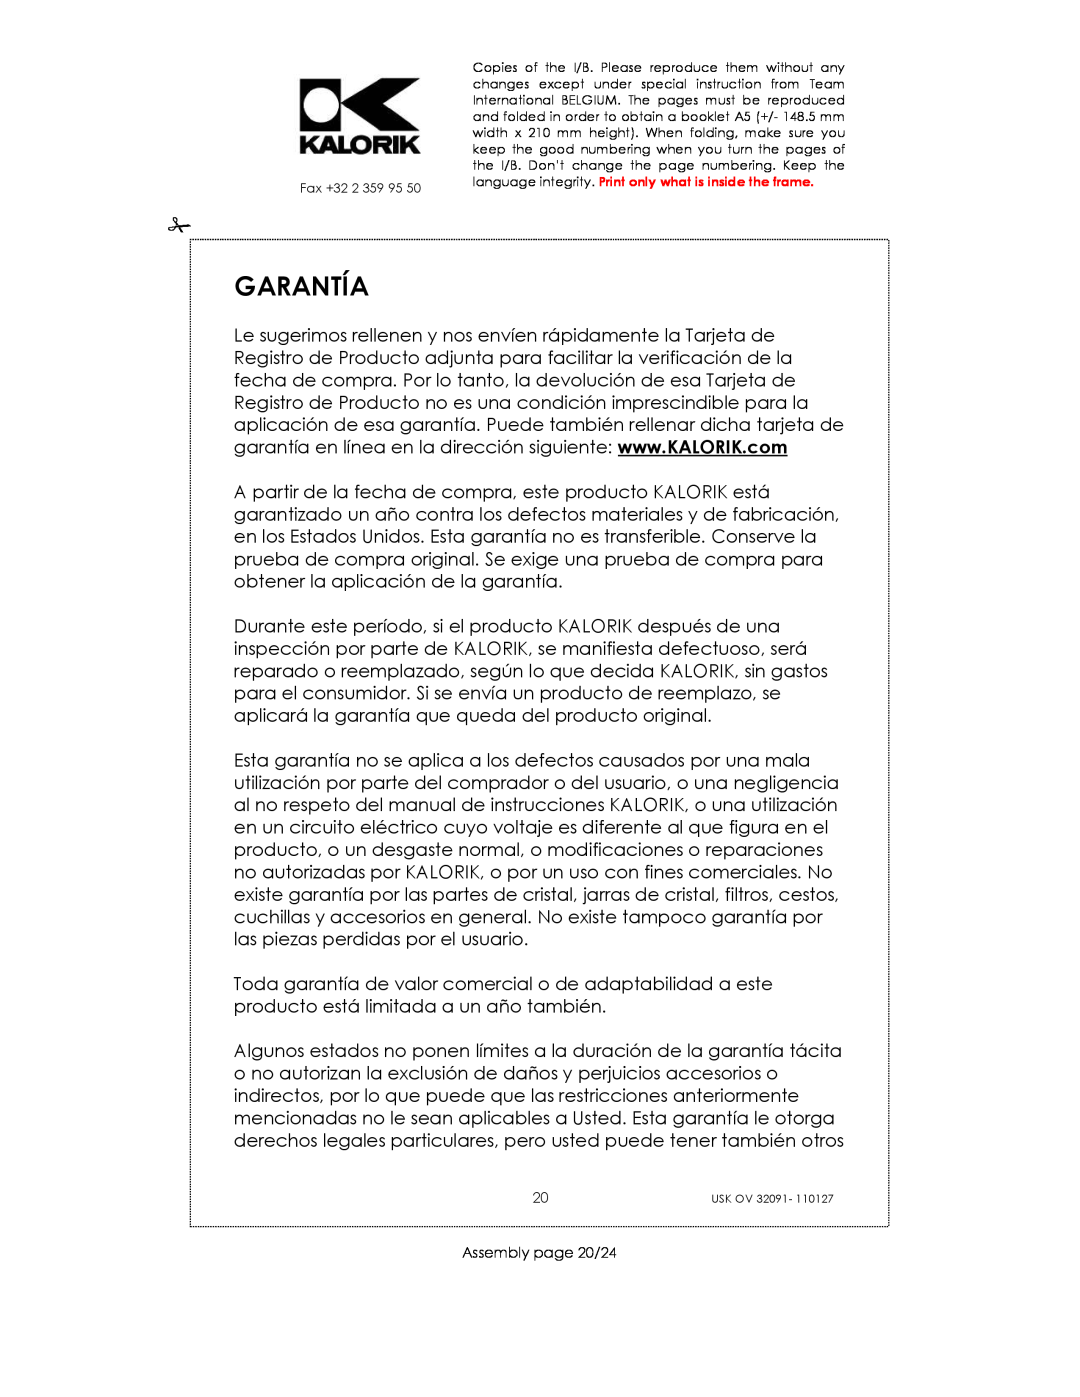 Kalorik USK OV 32091 manual Garantía, Assembly page 20/24 